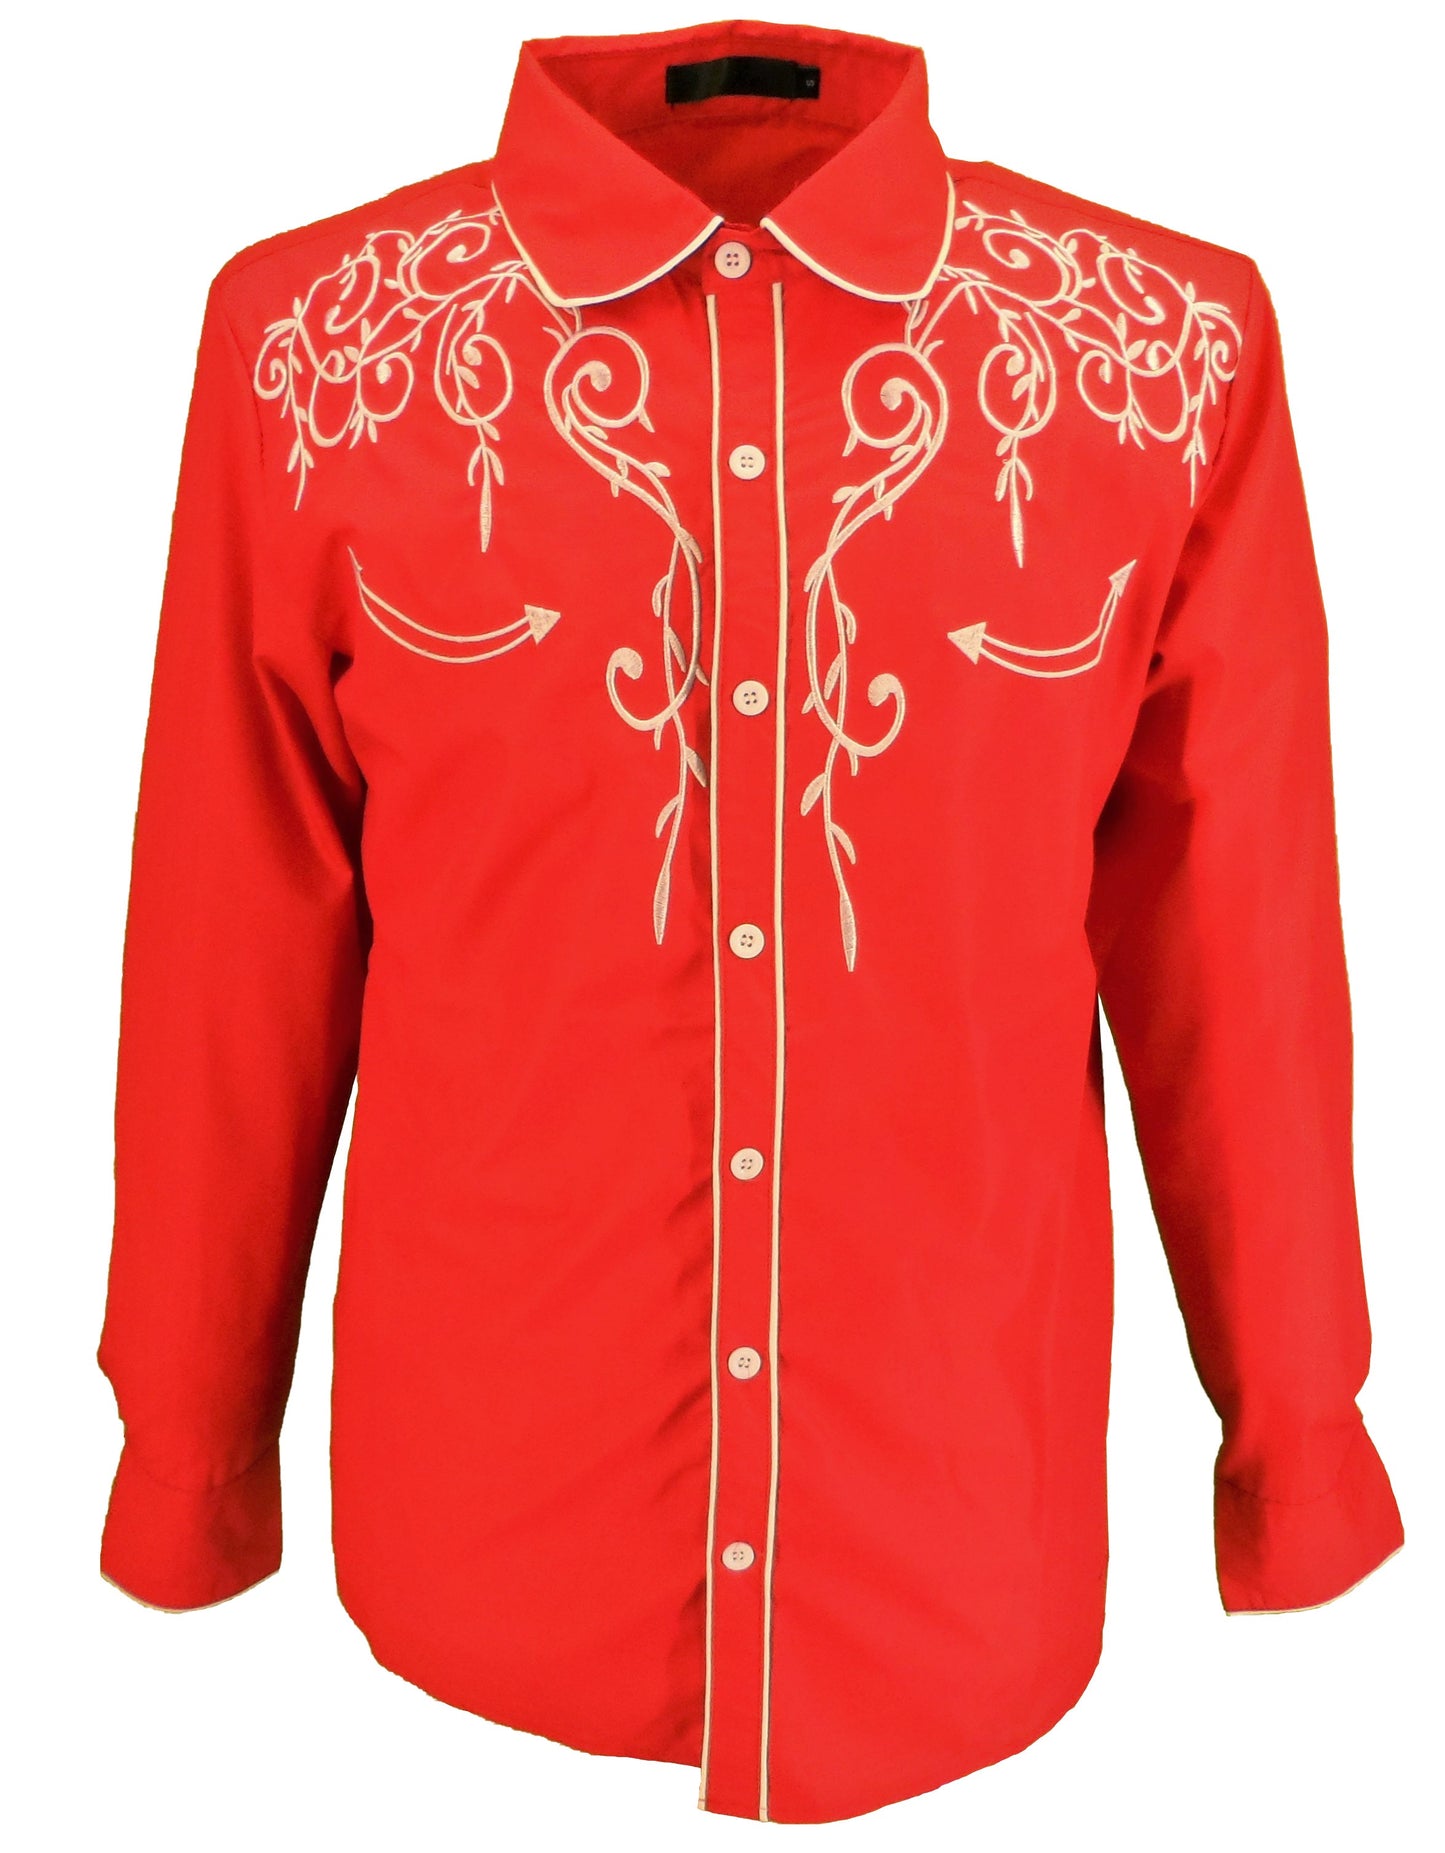 Men's Red Cowboy Shirt – Mazeys UK